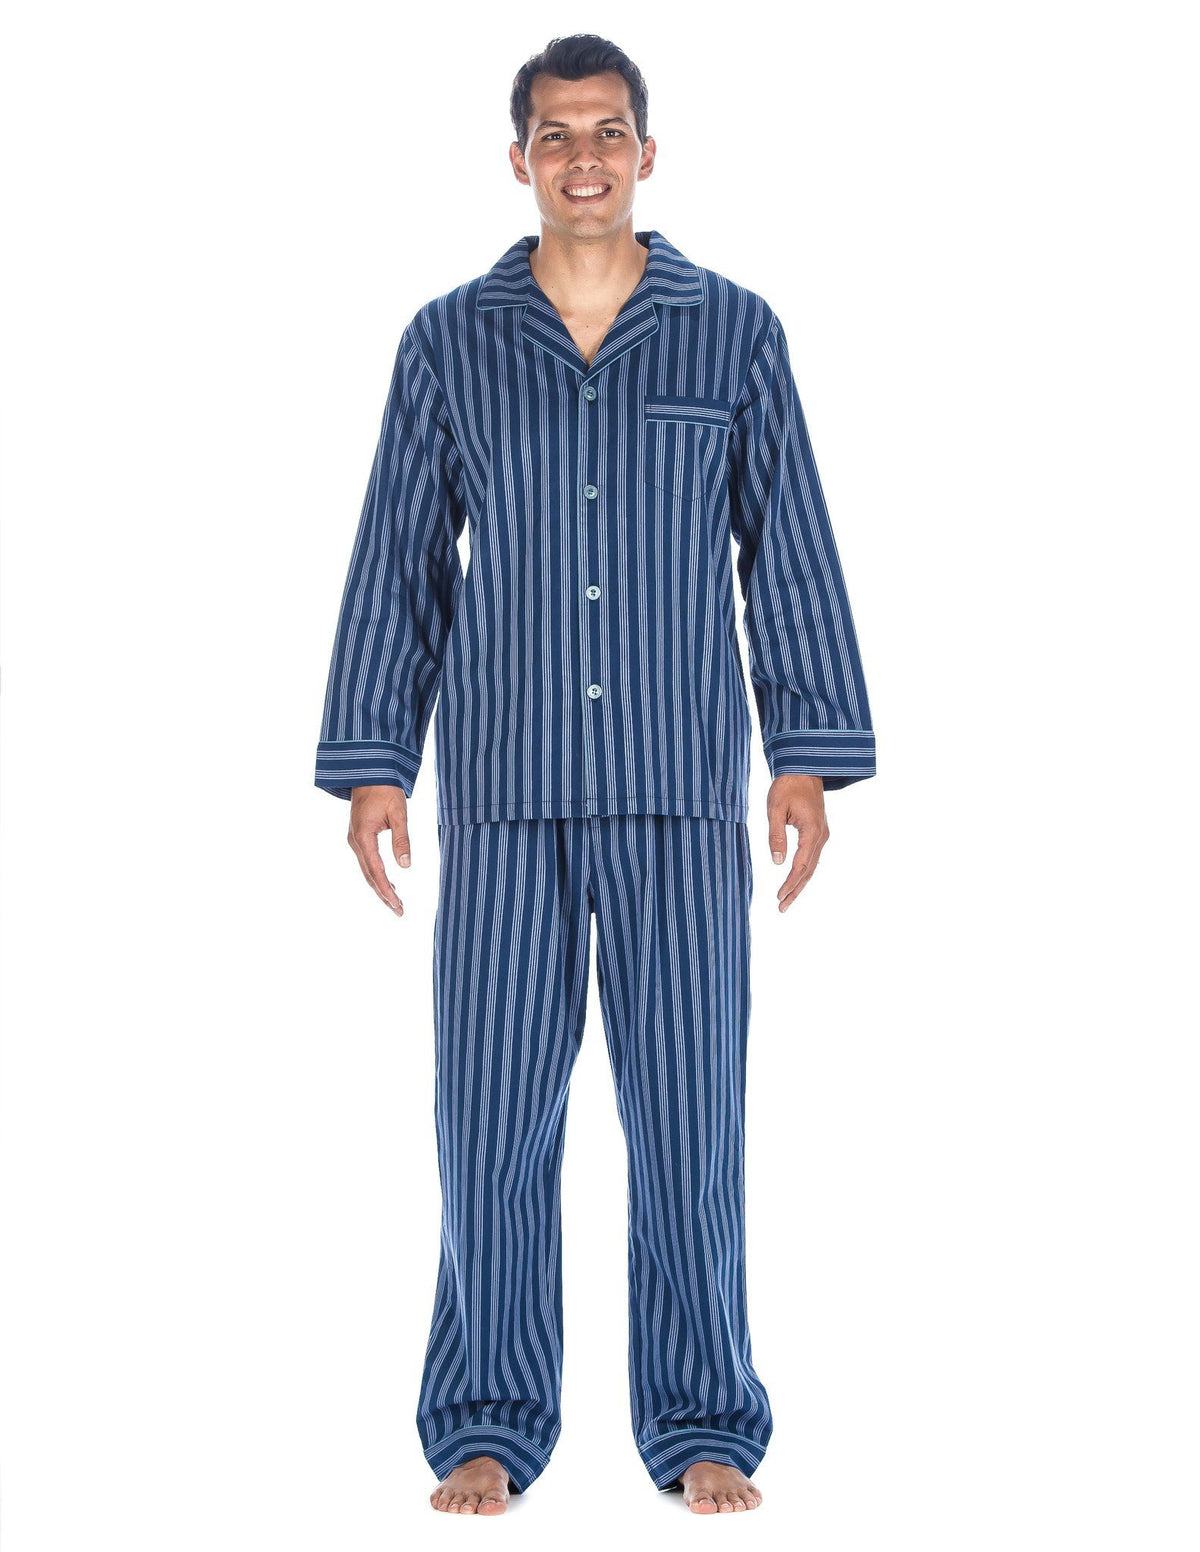 Mens Premium 100% Cotton Woven Pajama Sleepwear Set - Stripes Blue Tone